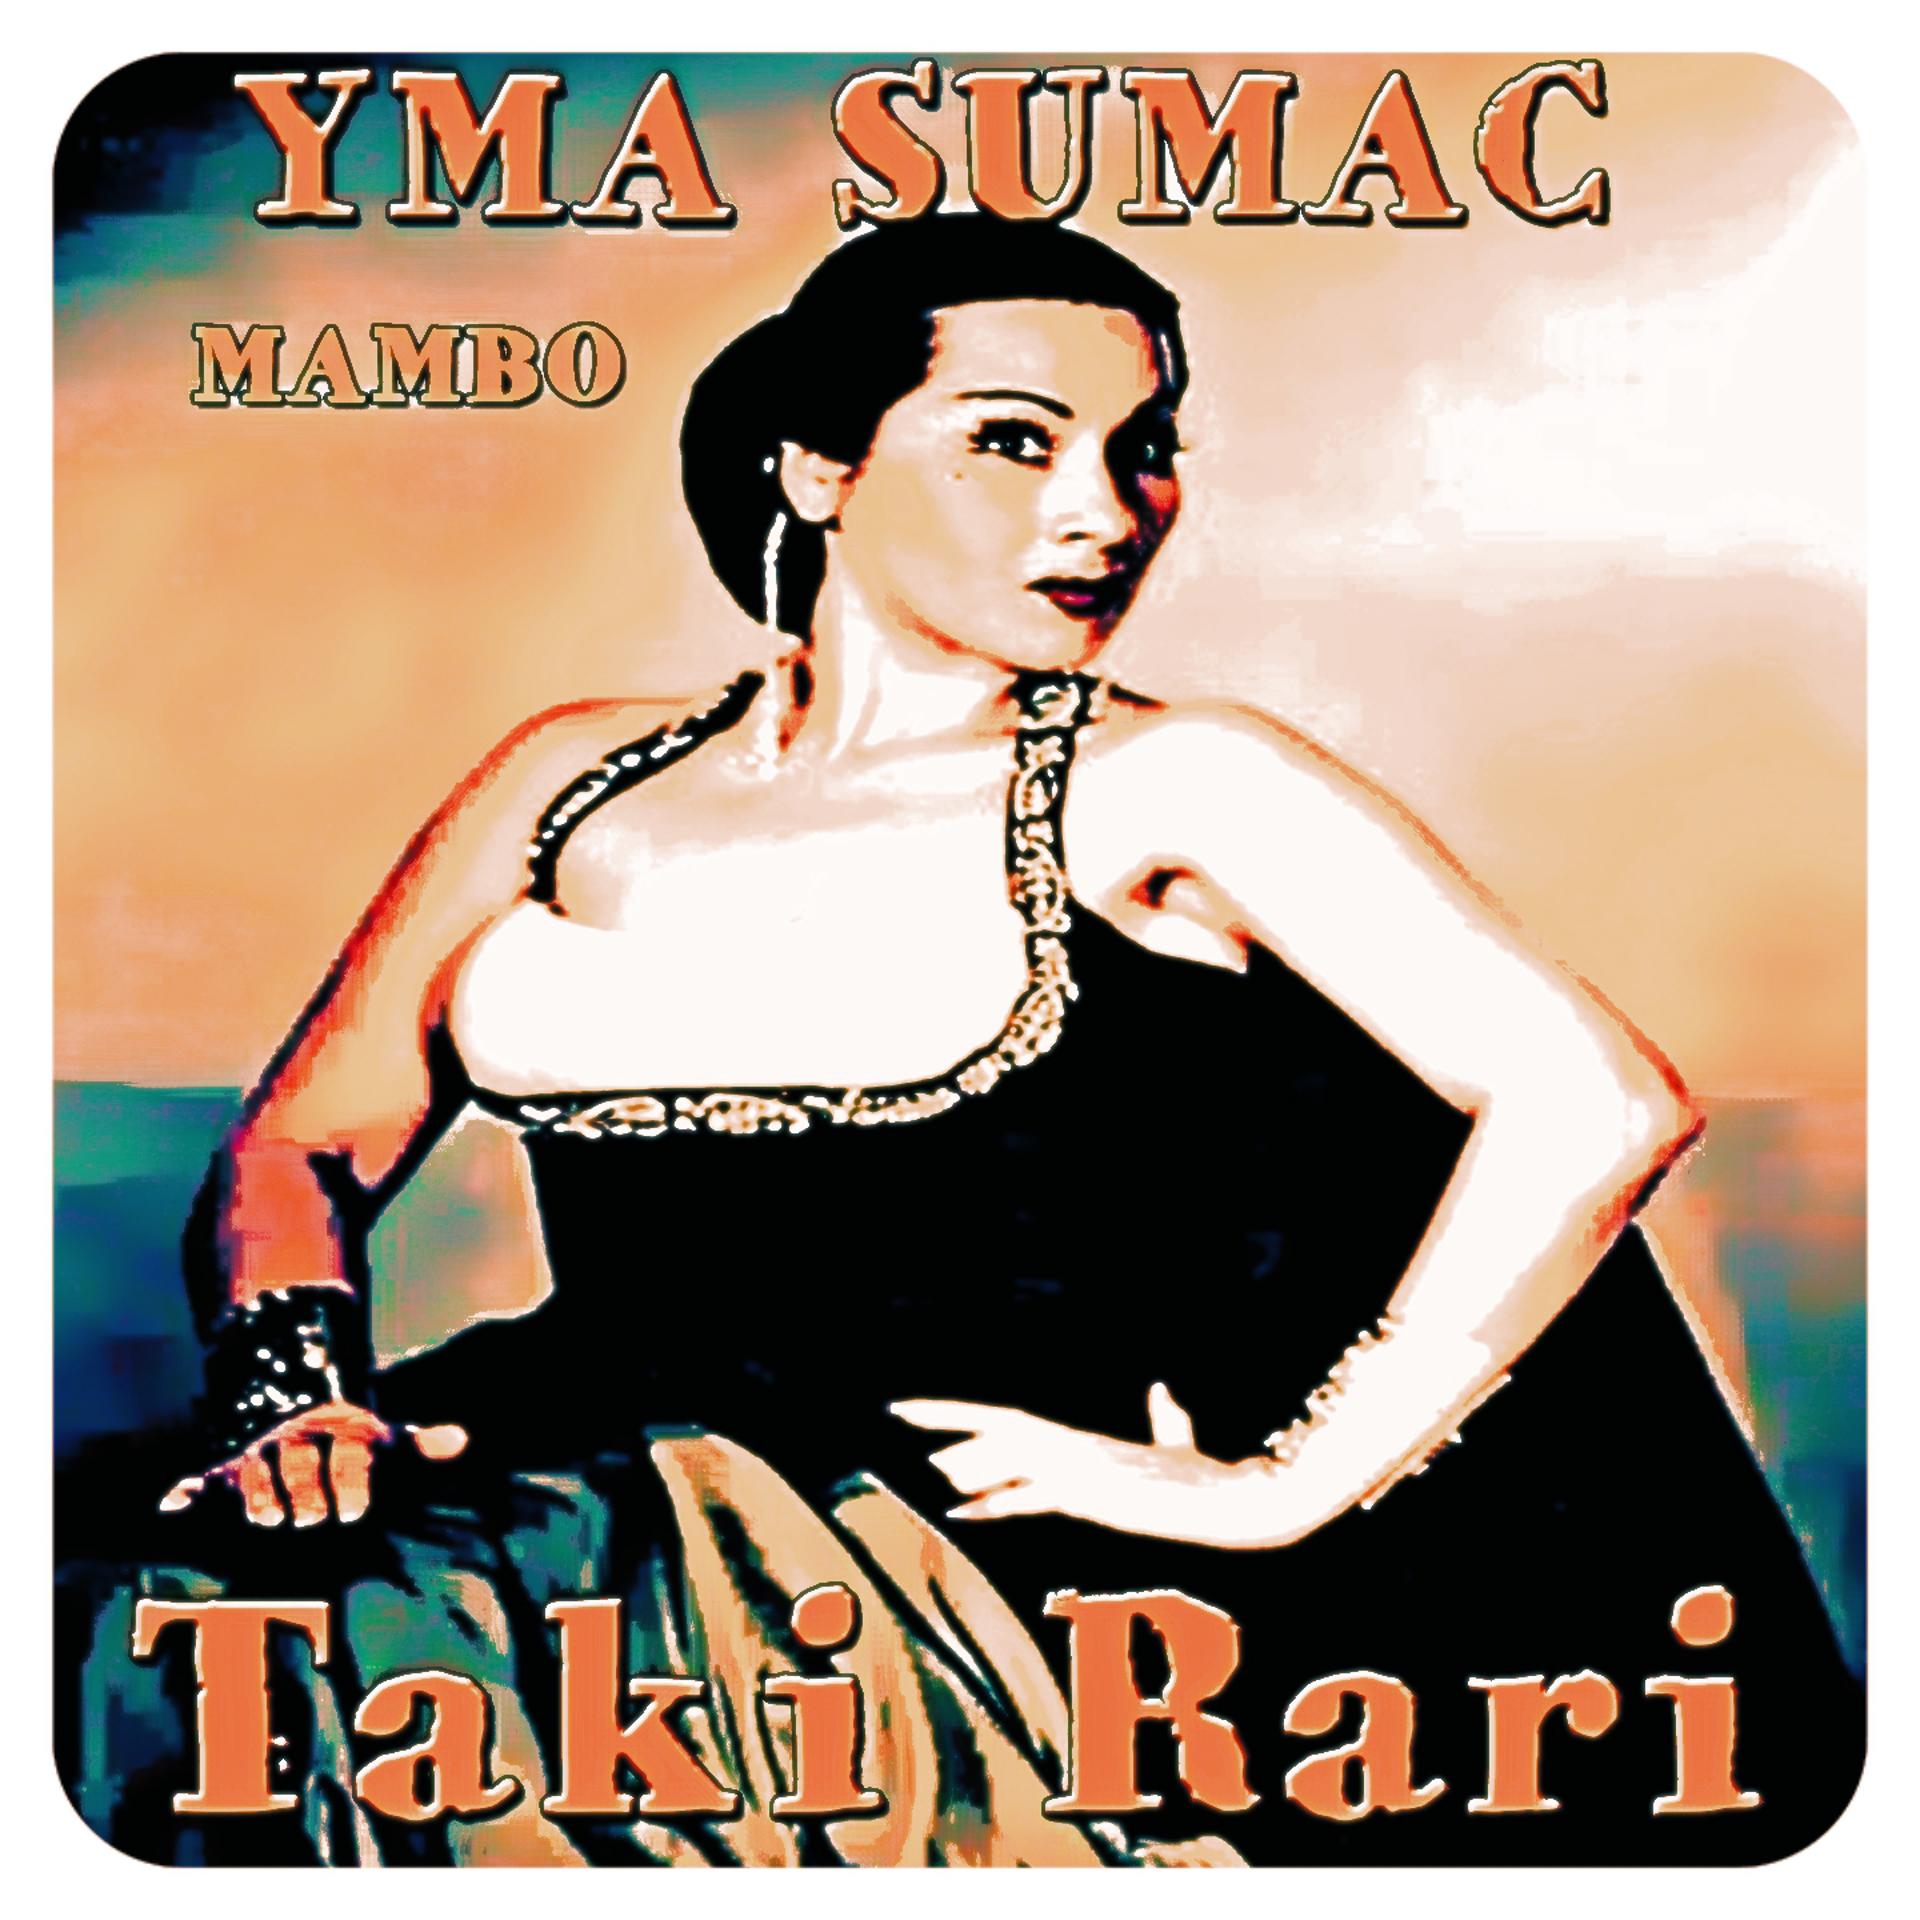 Постер к треку Yma Sumac - Taki Rari (Mambo)